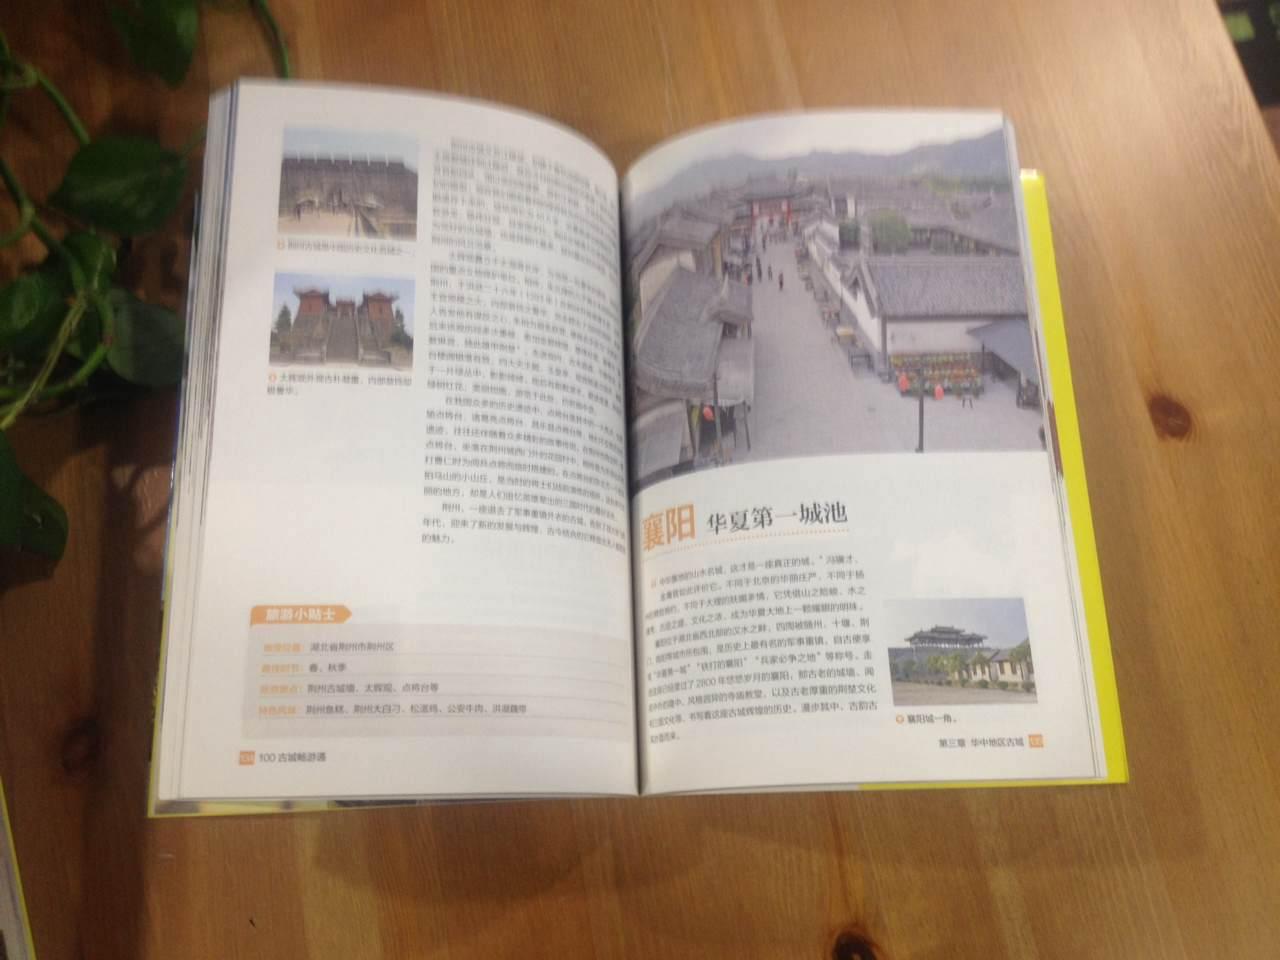 通过这本书，了解了中国的100处魅力古城，伴随优美文字和画面进入古城历史烟云之中，很惬意。点赞！